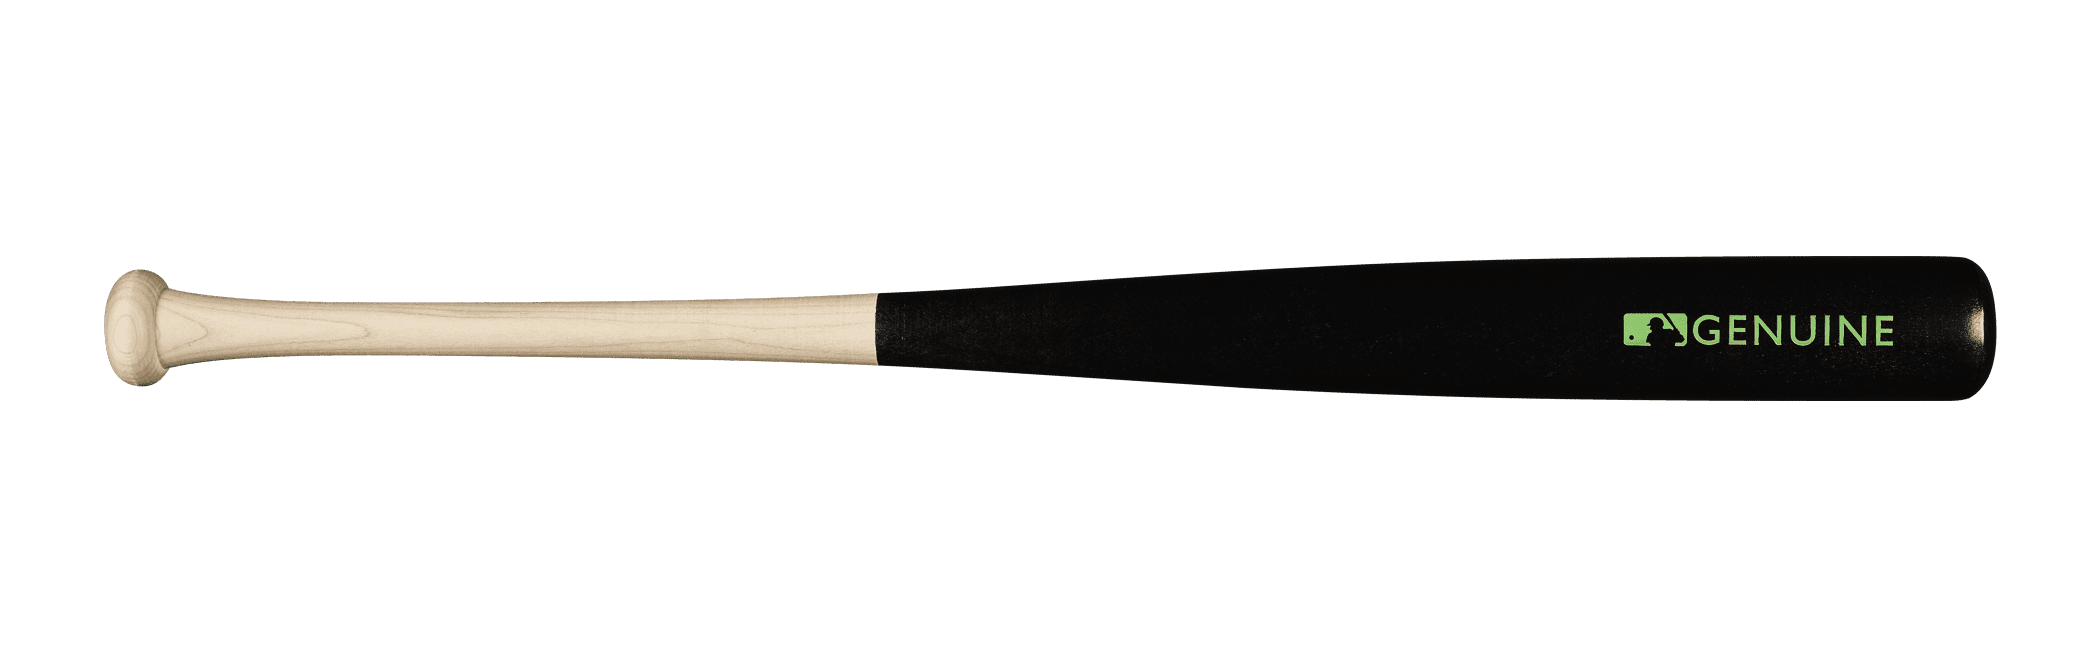 New Louisville Slugger Genuine Mix Unfinished Light Blue Baseball Bat